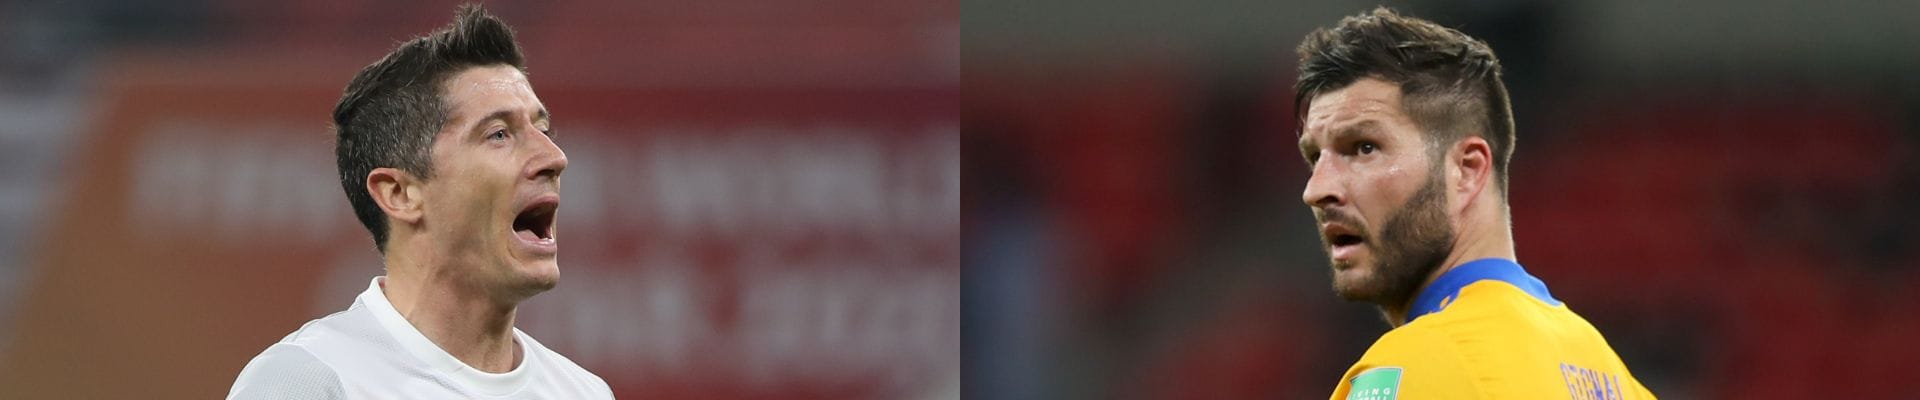 Bayern Monaco-Tigres, Mondiale per club: chi salirà sul tetto del mondo?